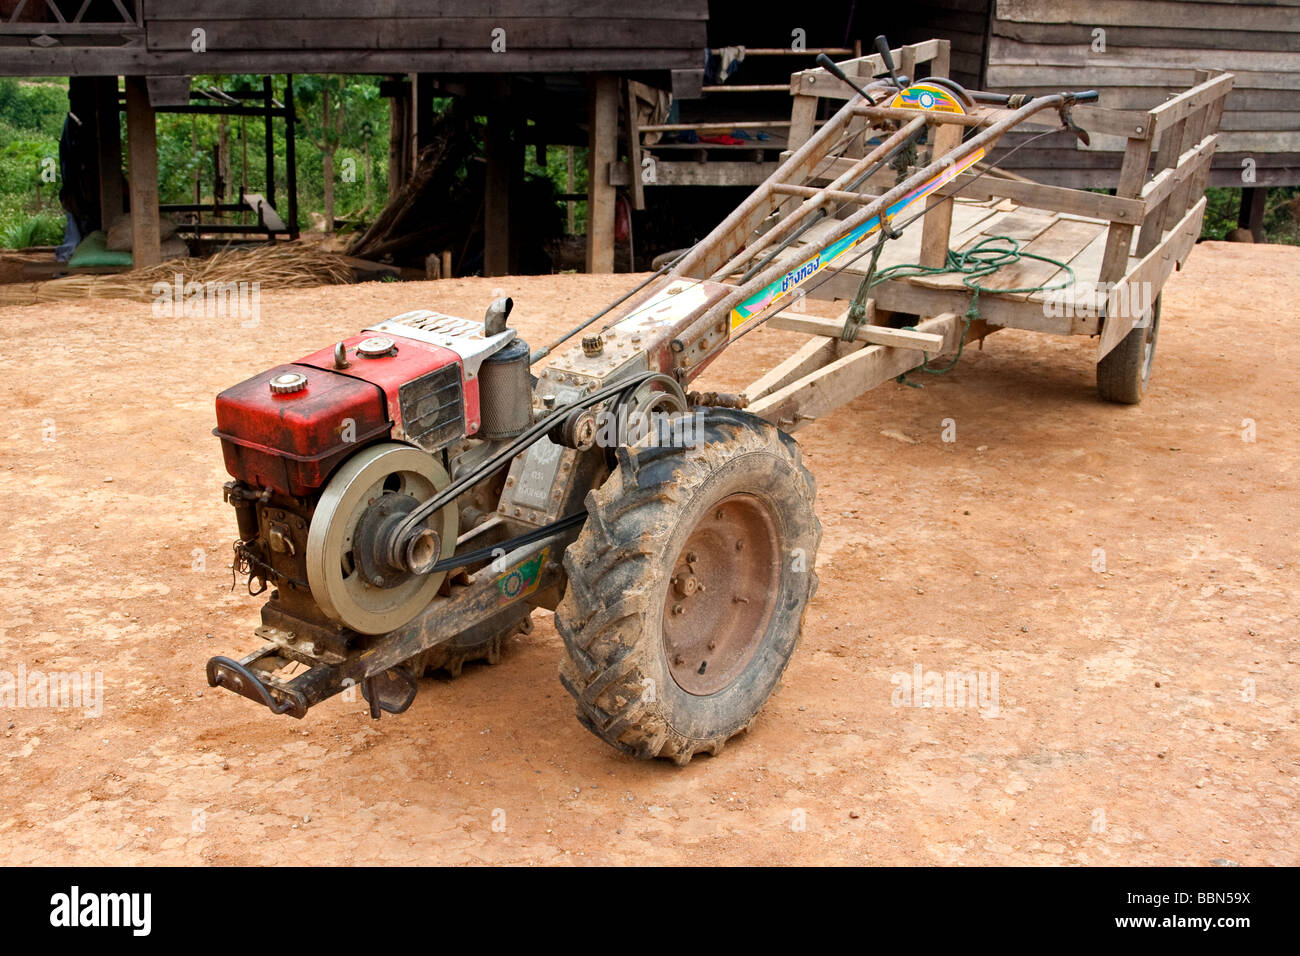 Forma tradizionale di trasporto in Laos, piccolo motore tractror con passeggero o porta carichi collegati alla parte posteriore, Lak Xao, Laos Foto Stock